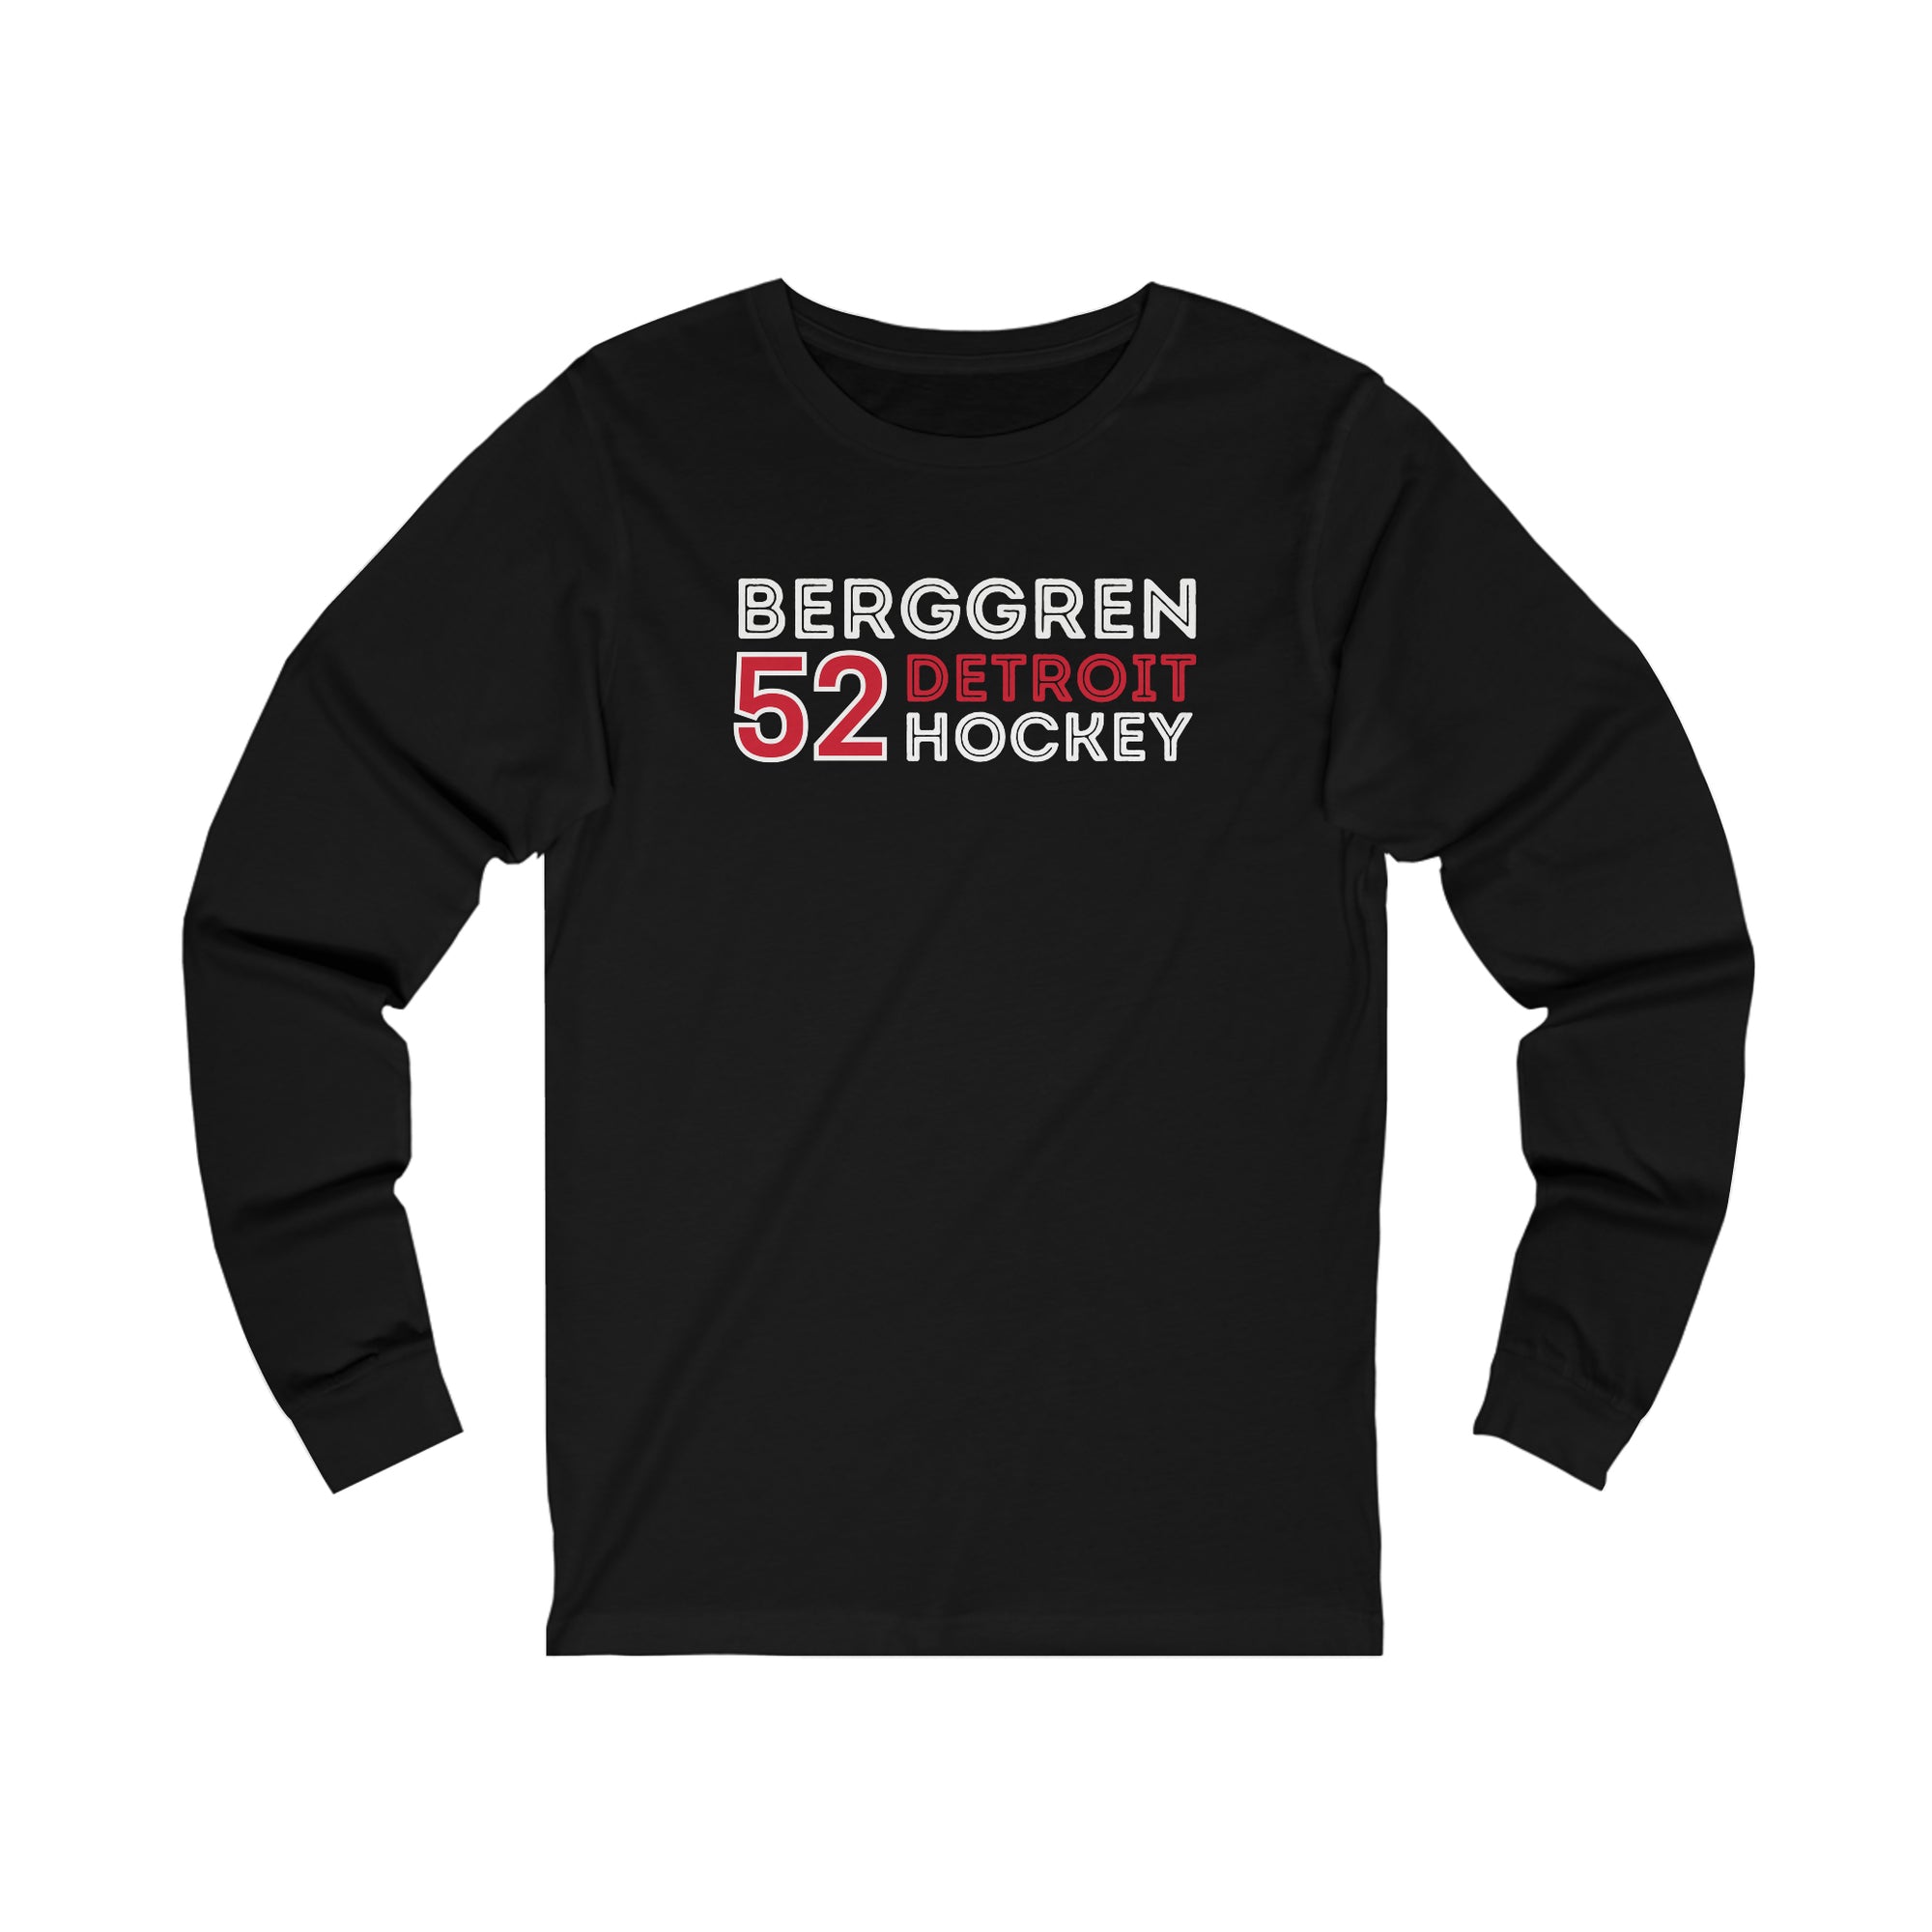 Berggren 52 Detroit Hockey Grafitti Wall Design Unisex Jersey Long Sleeve Shirt